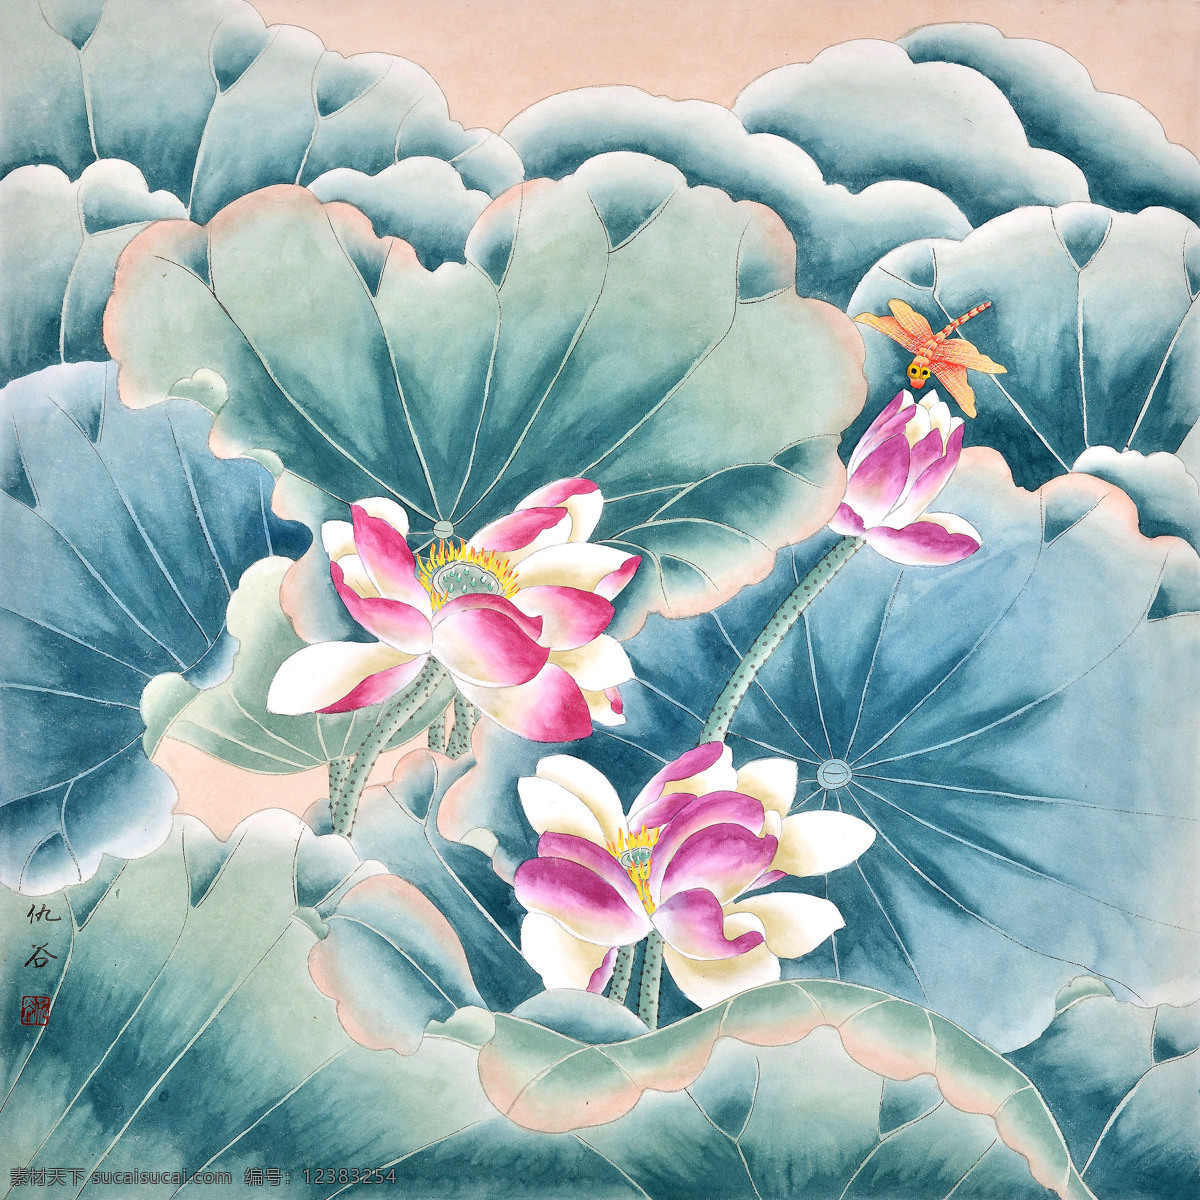 荷花蜻蜓图 美术 中国画 荷花 蜻蜓 仇谷国画 国画集124 文化艺术 绘画书法